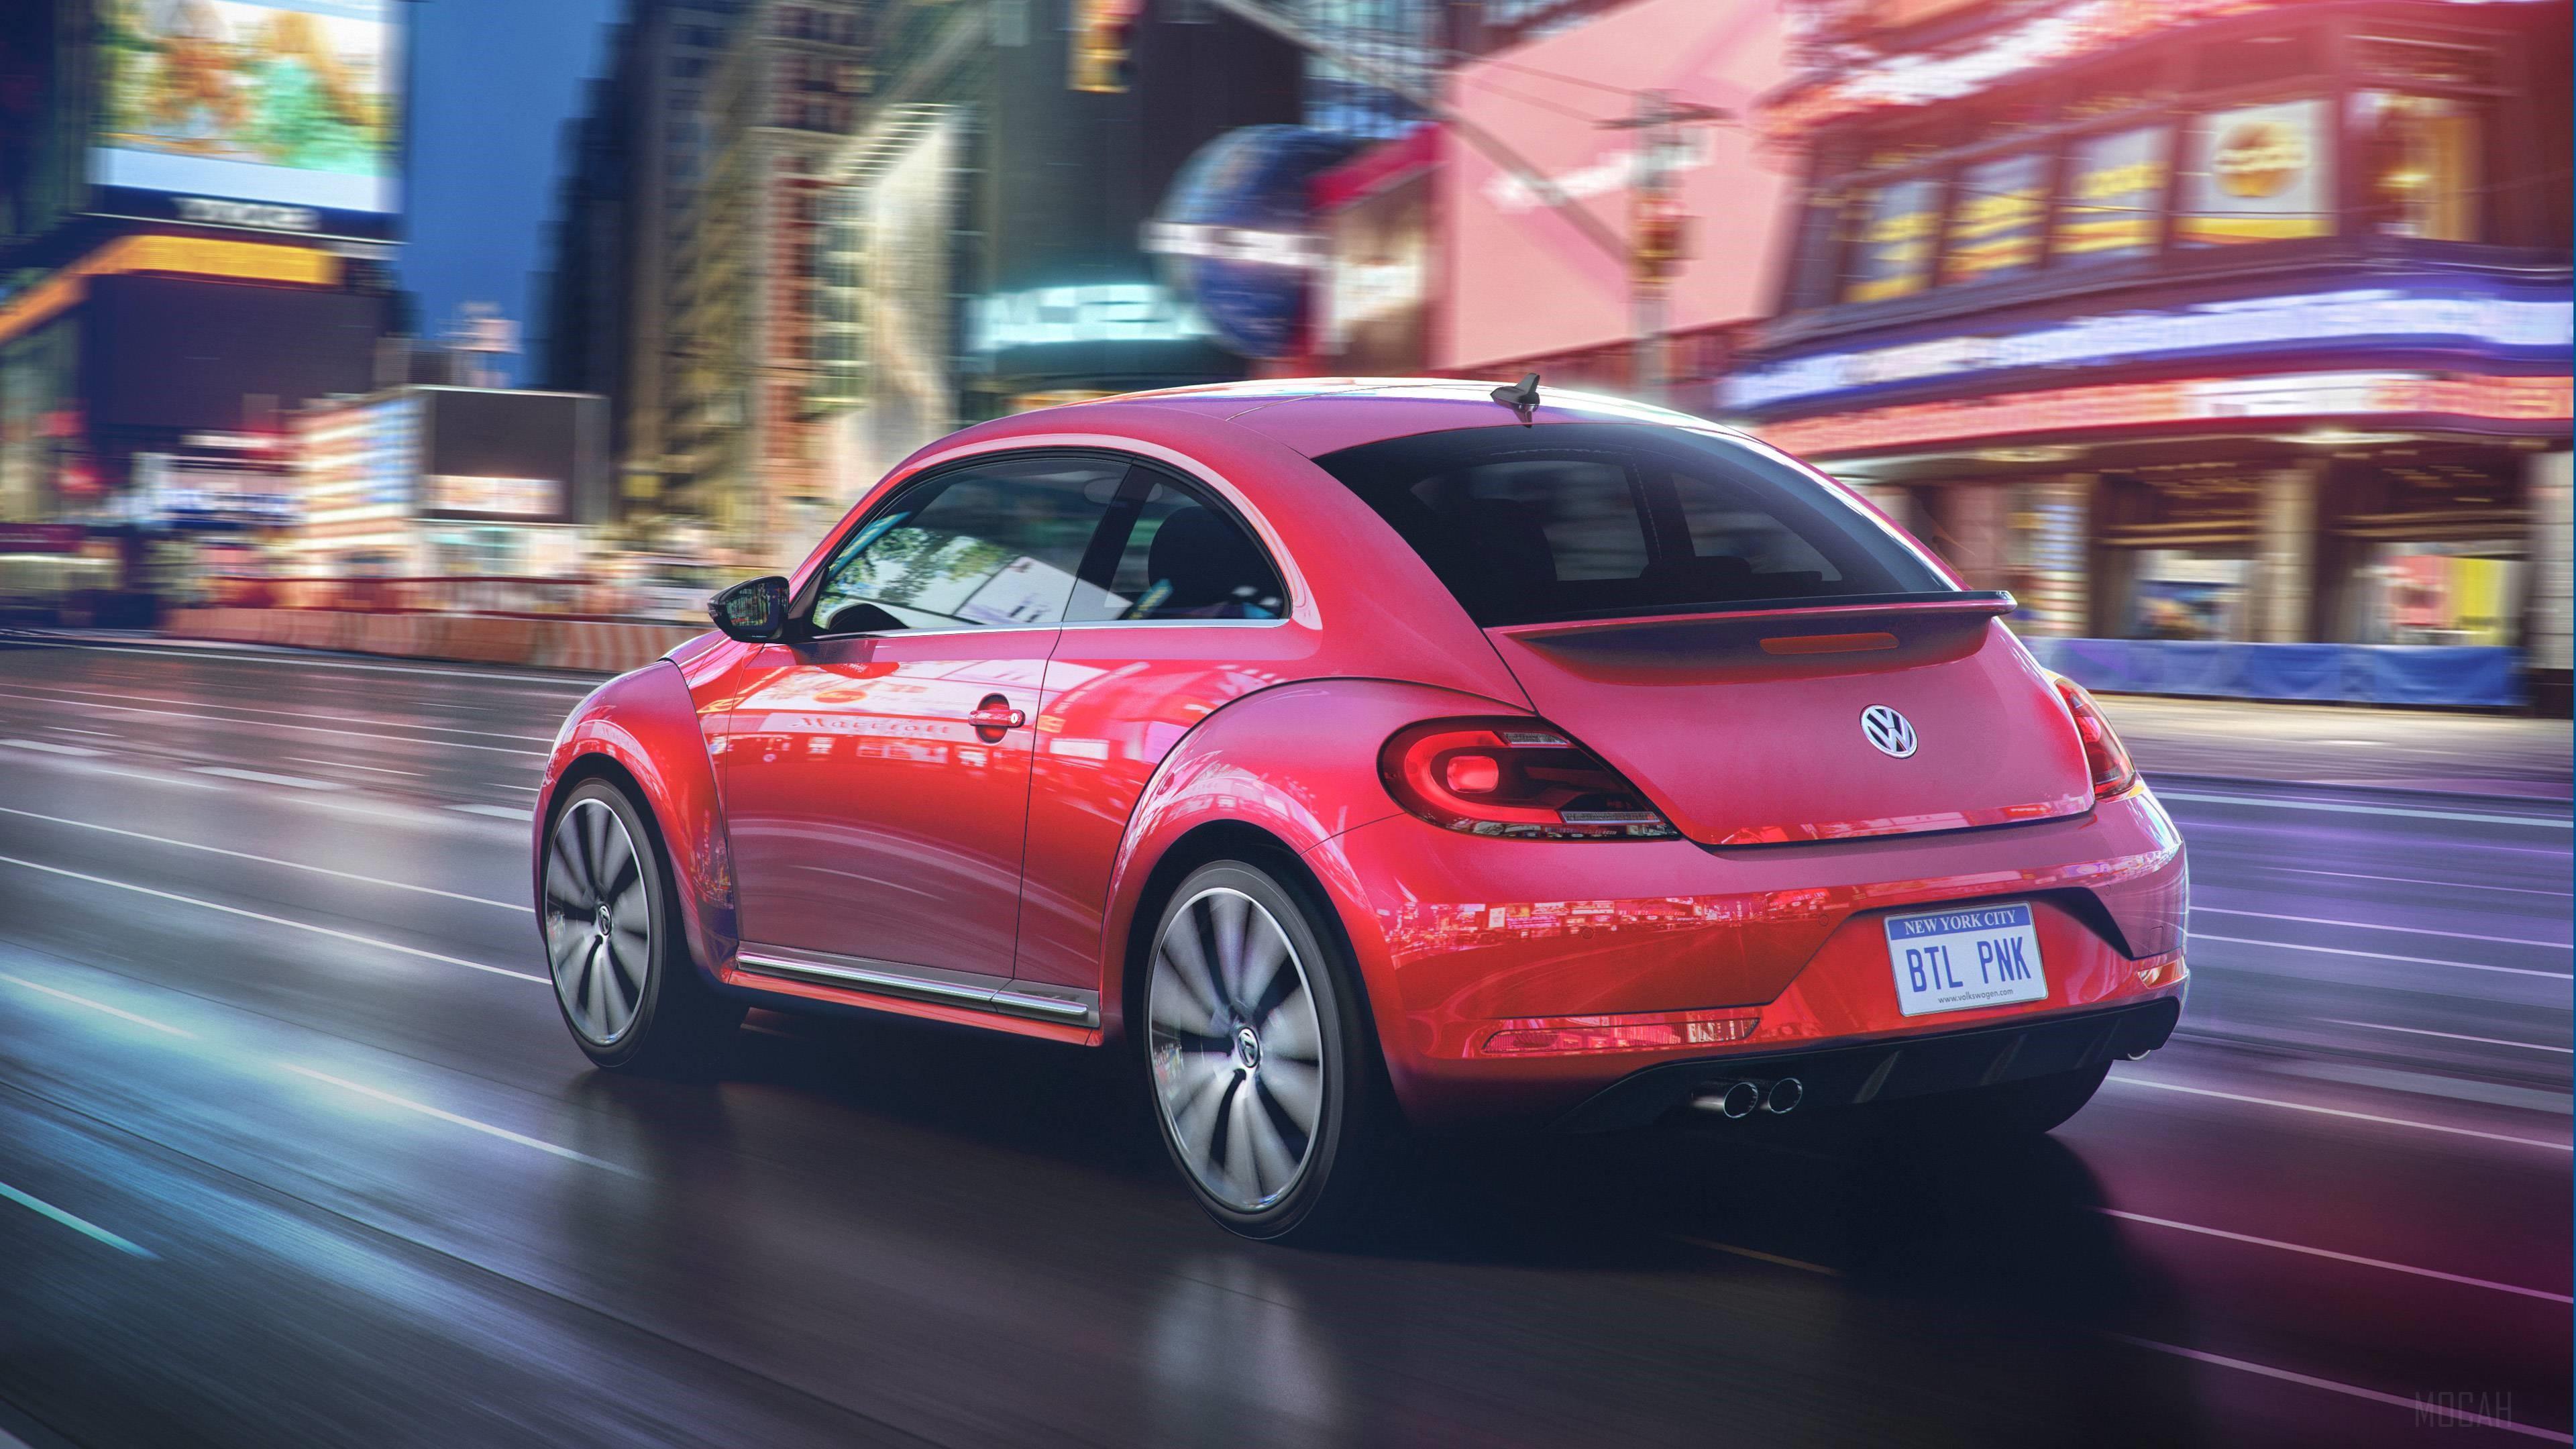 HD wallpaper, 2017 Volkswagen Pink Beetle Model 4K